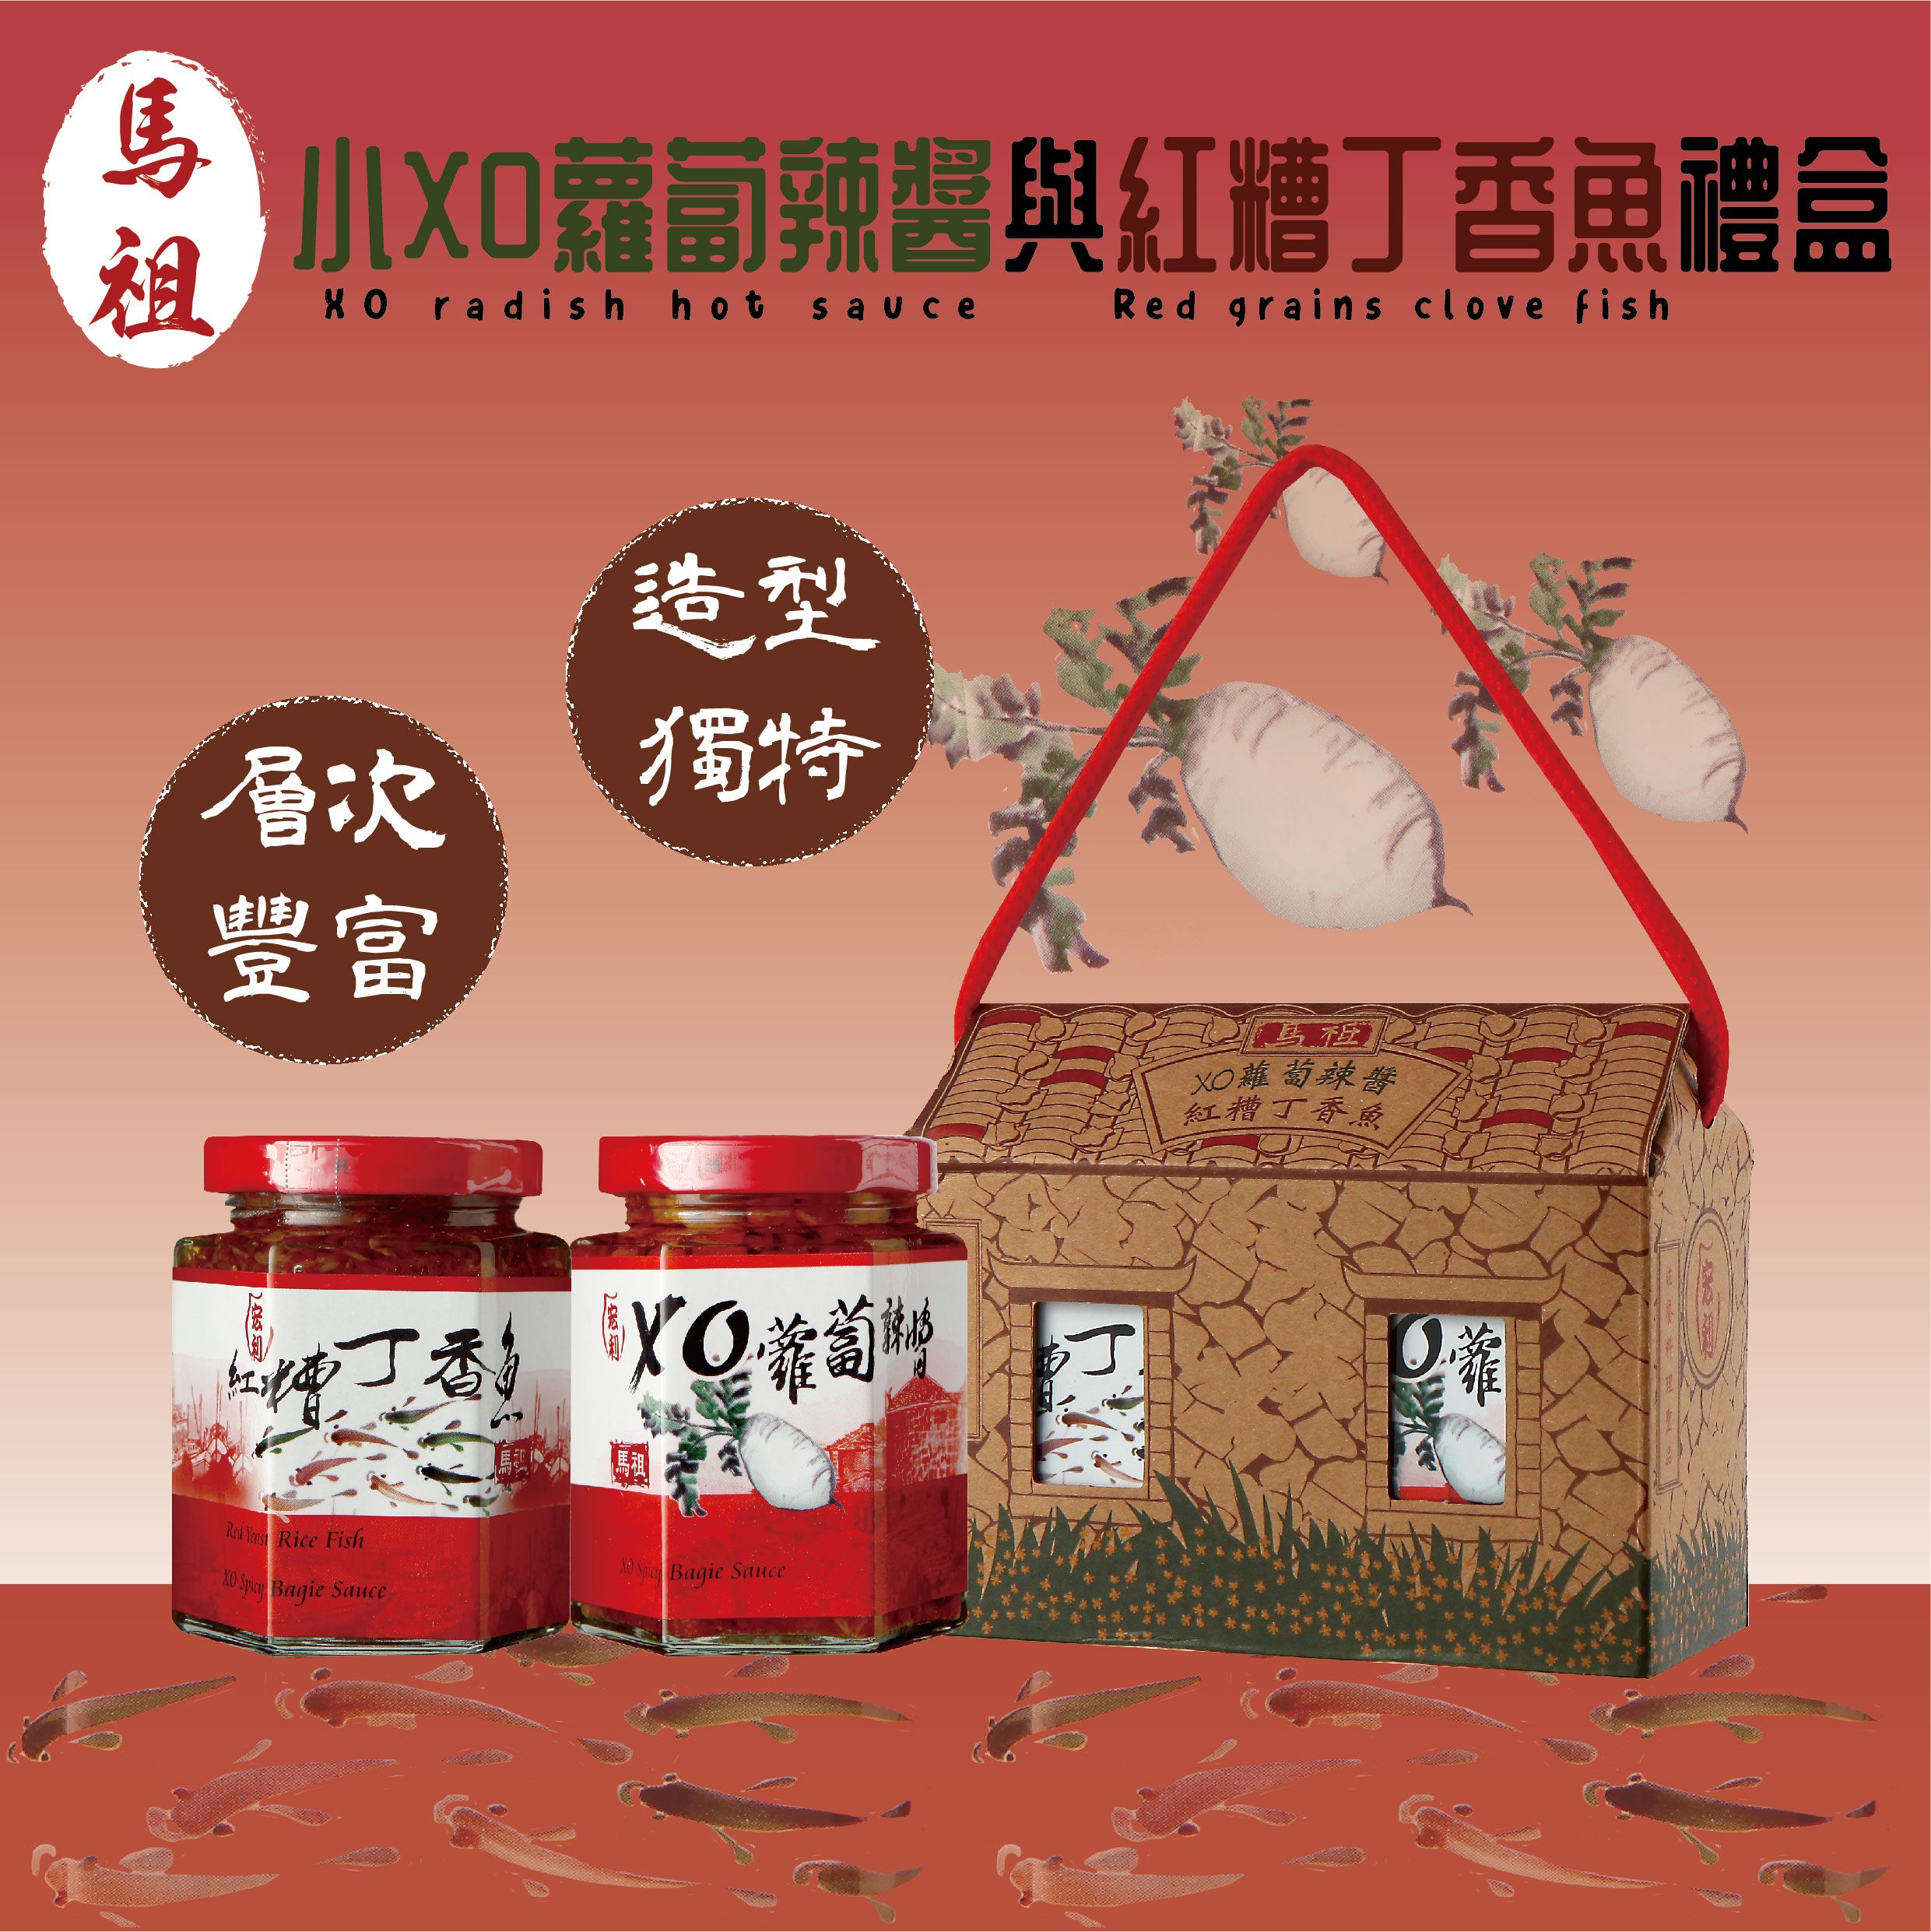 小屋禮盒 | 小xo蘿蔔辣醬 紅糟丁香魚 禮盒